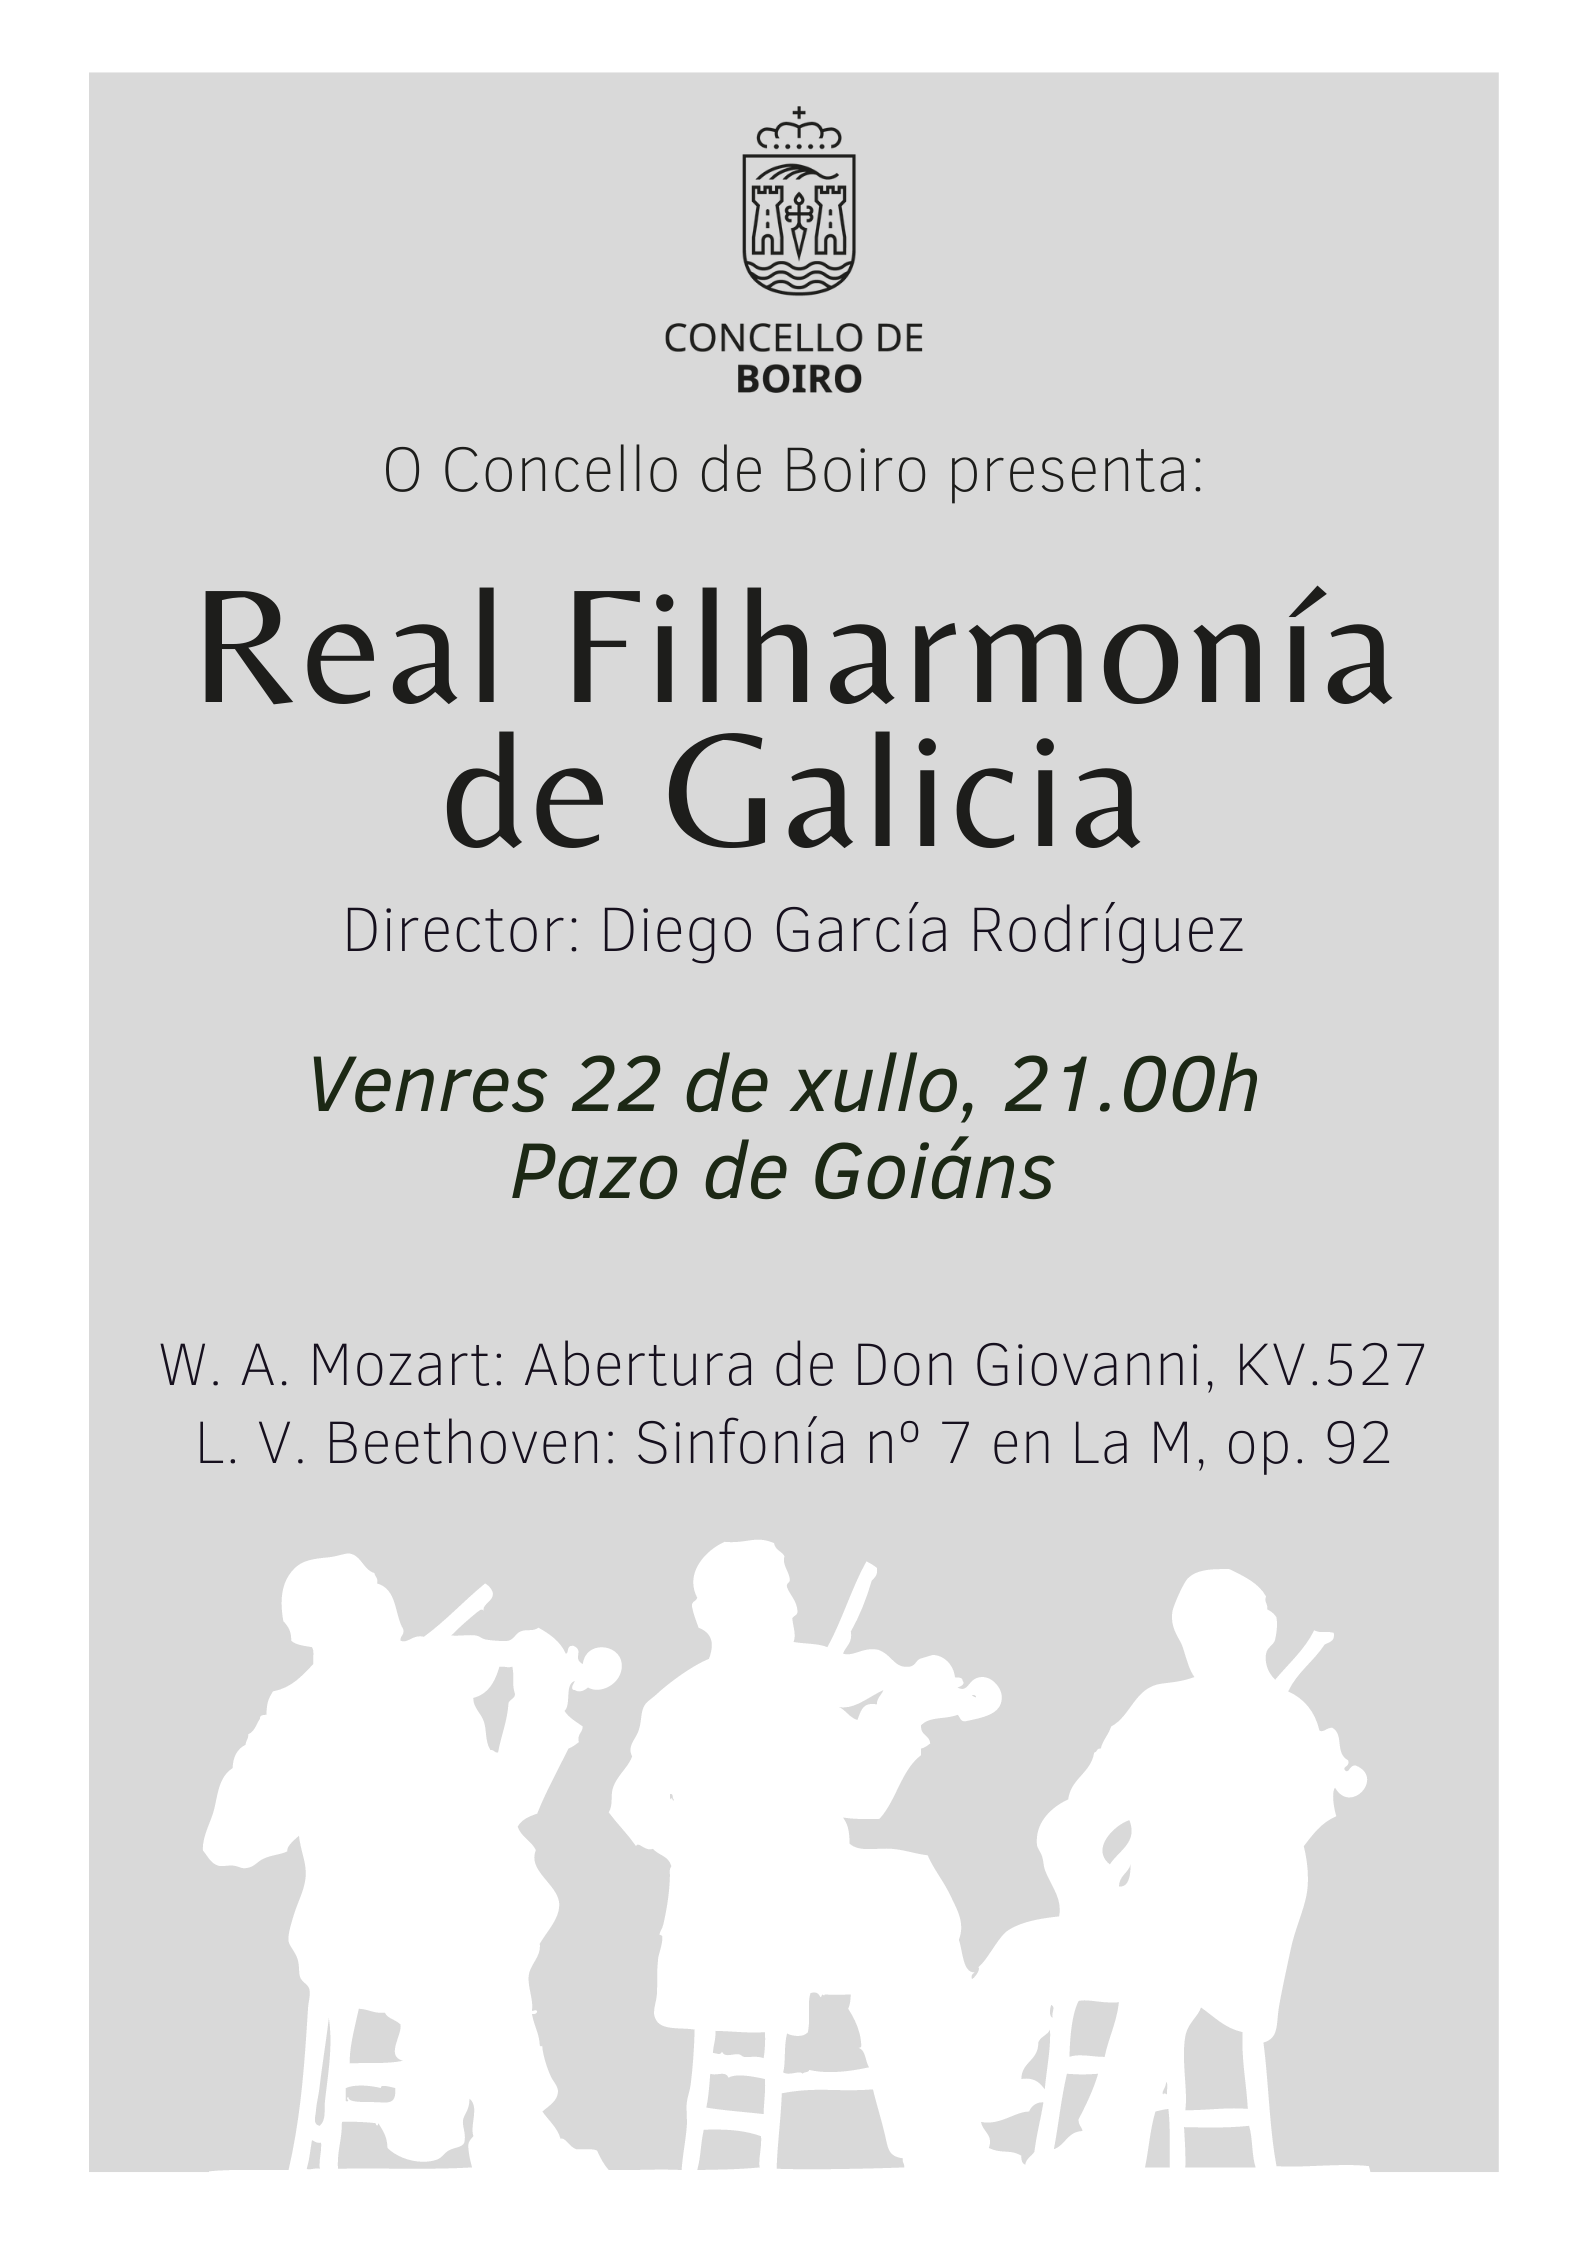 Concerto da Real Filharmonía de Galicia | Concello de Boiro 